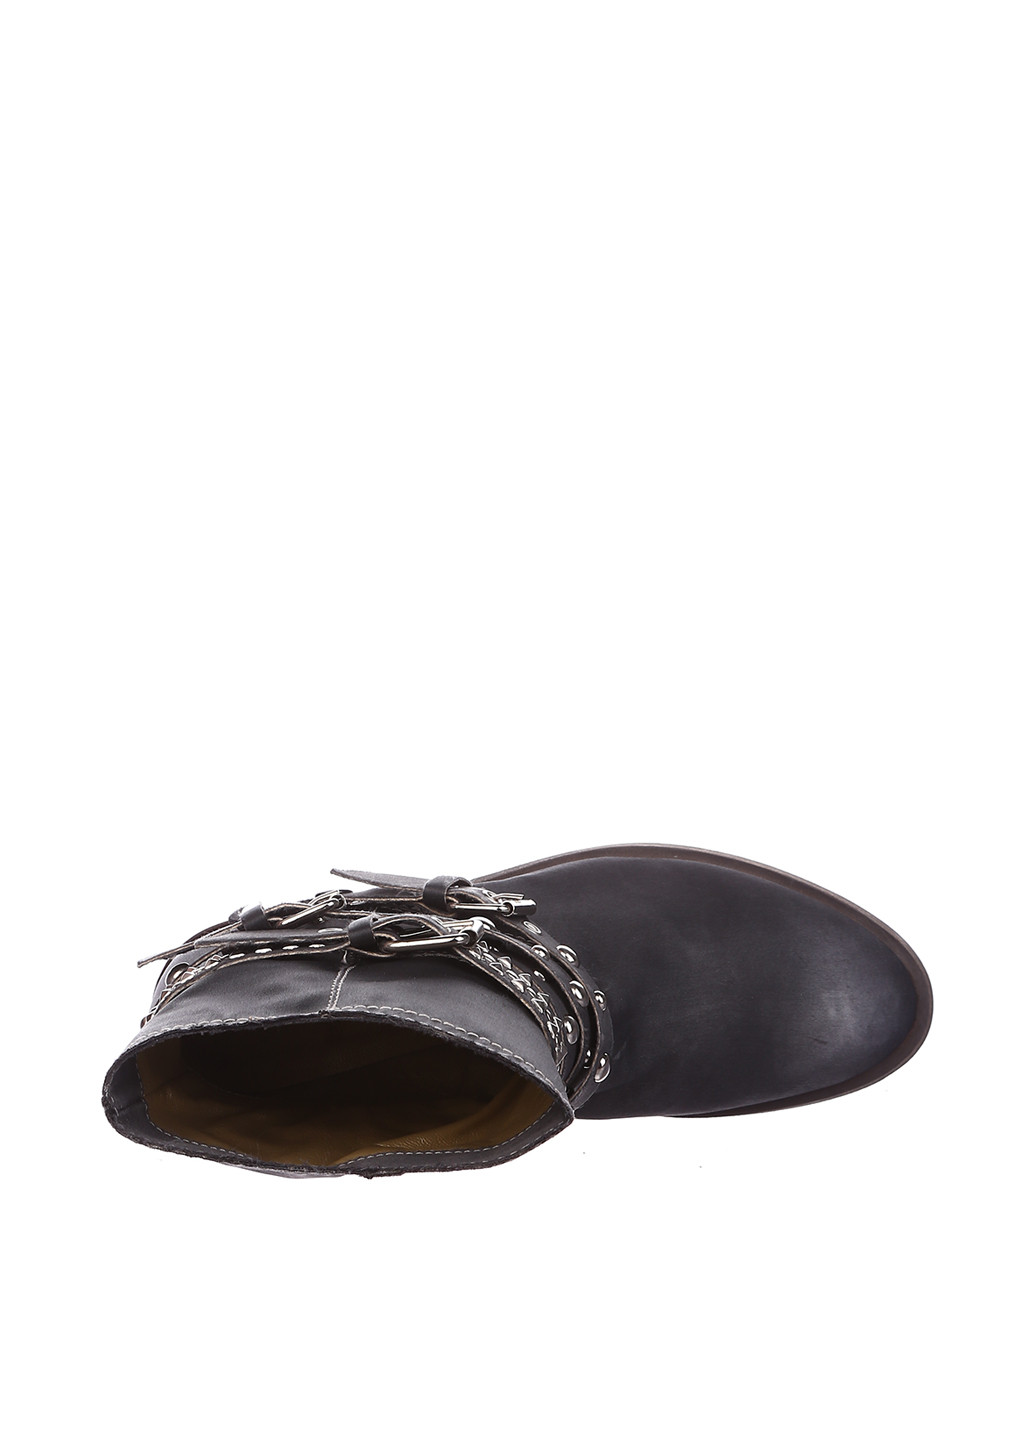 Осенние ботинки Perugini с пряжкой тканевые